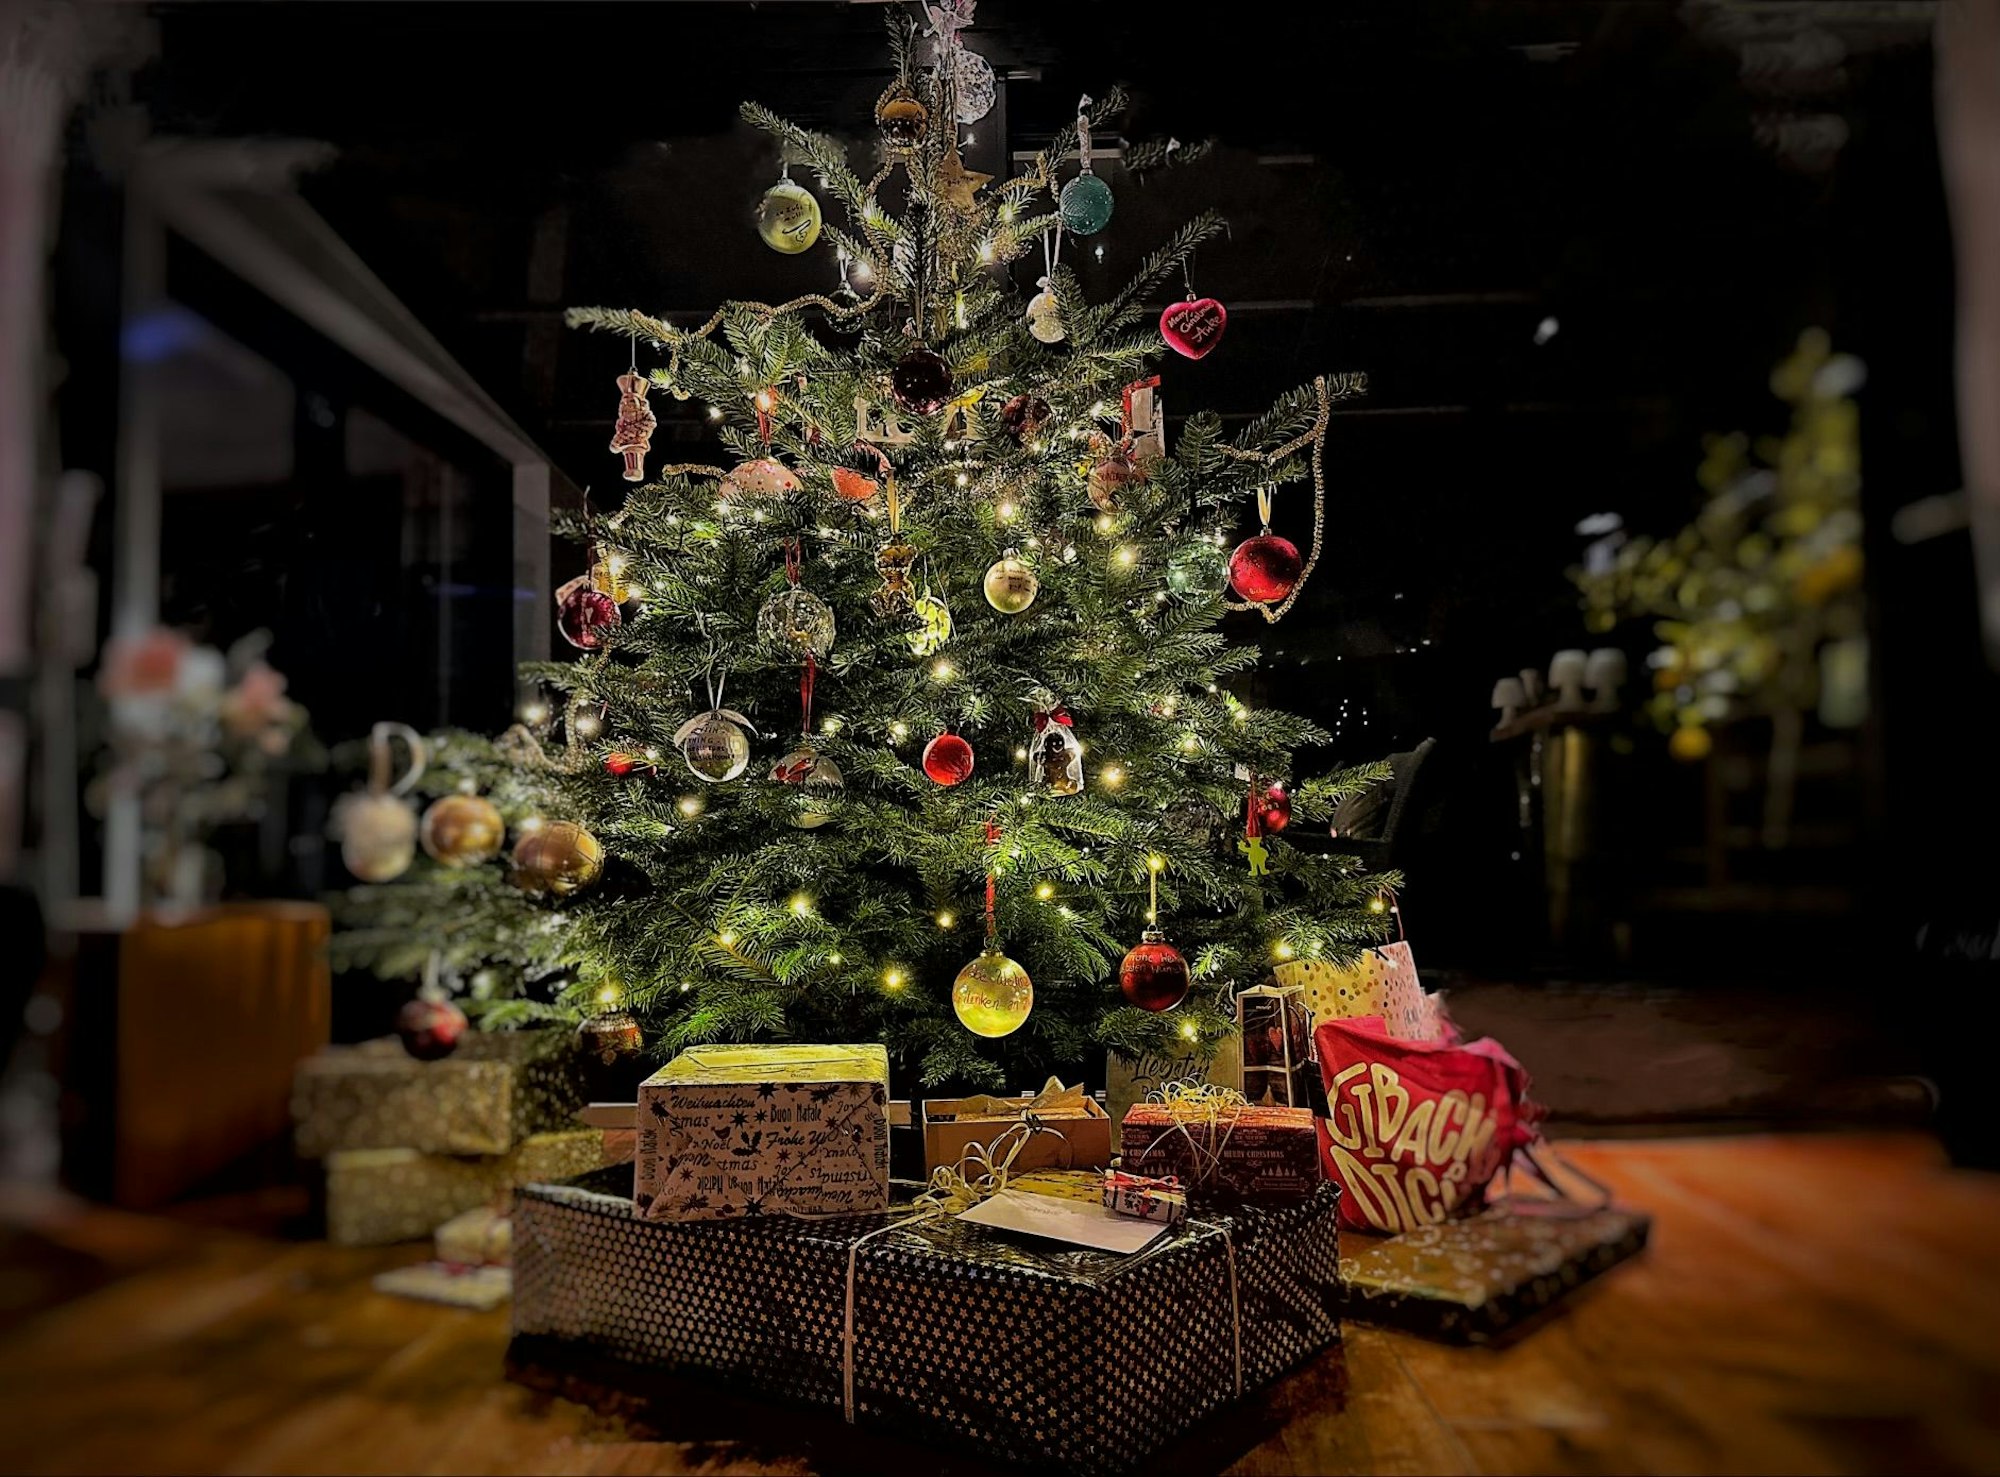 60 selbst gestaltete Weihnachtskugeln kamen am Baum der Familie Krautmacher zusammen.